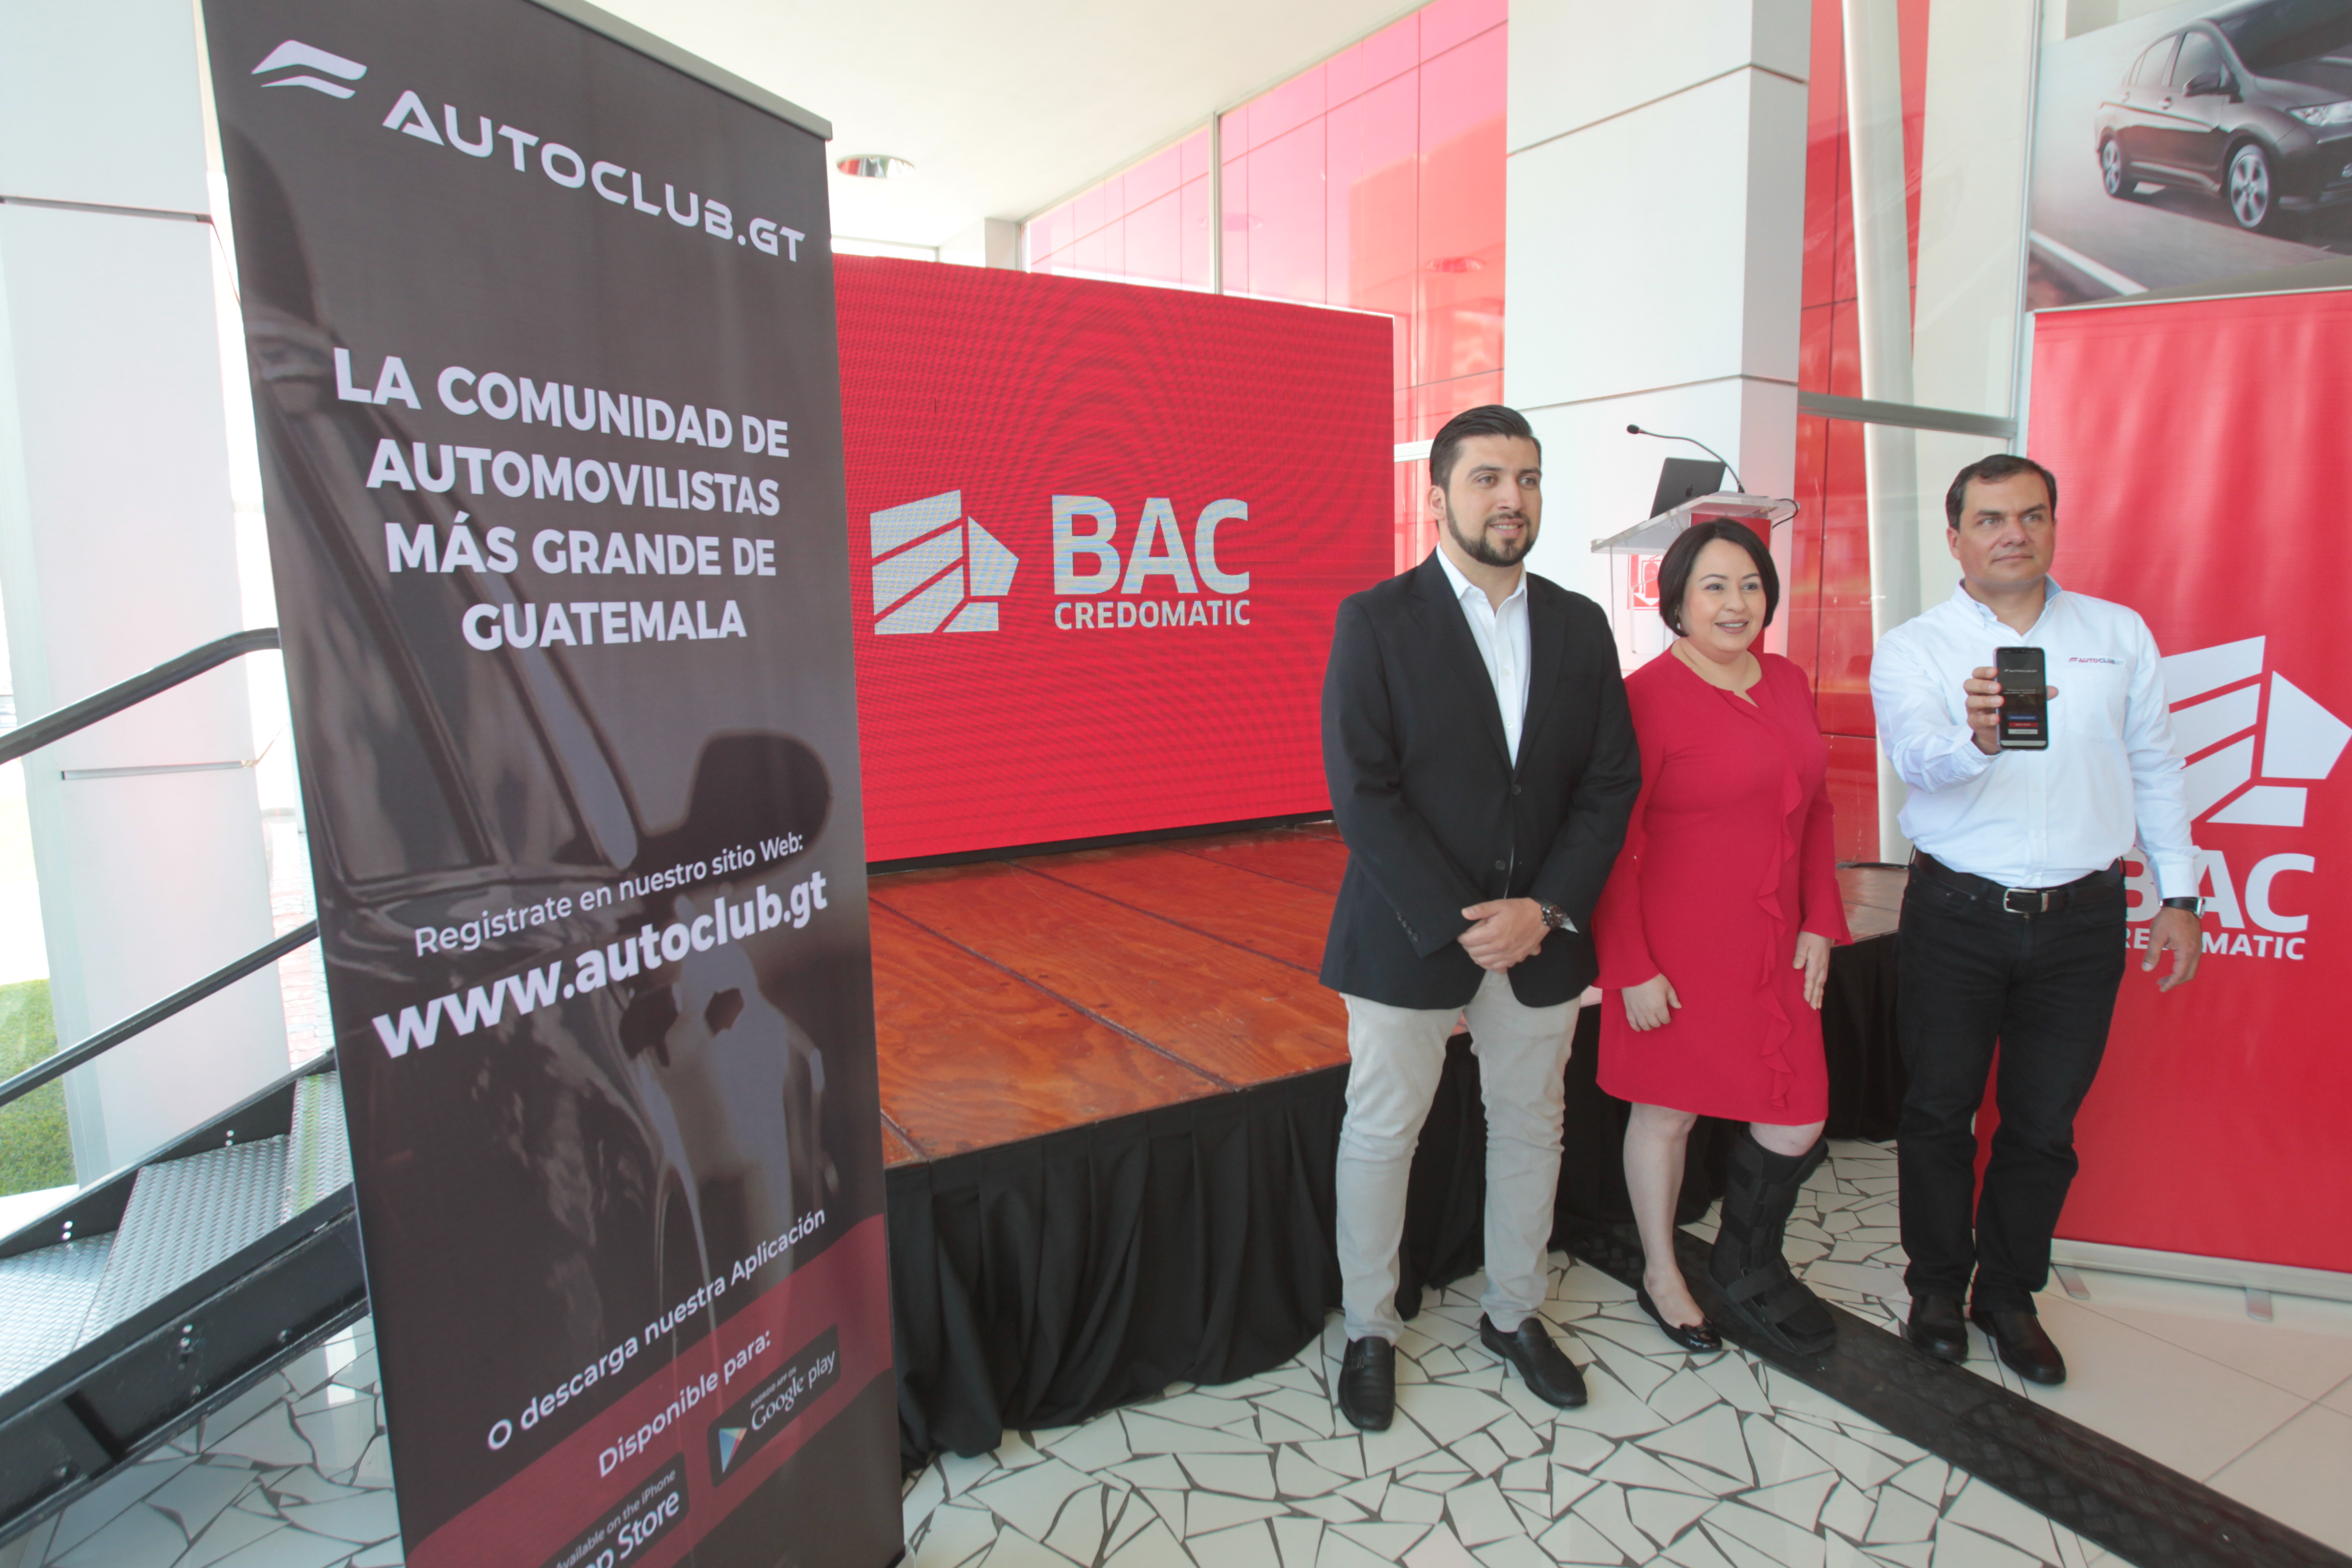 Representantes de Honda, BAC Credomatic y Autoclub.GT en la presentación dela plataforma